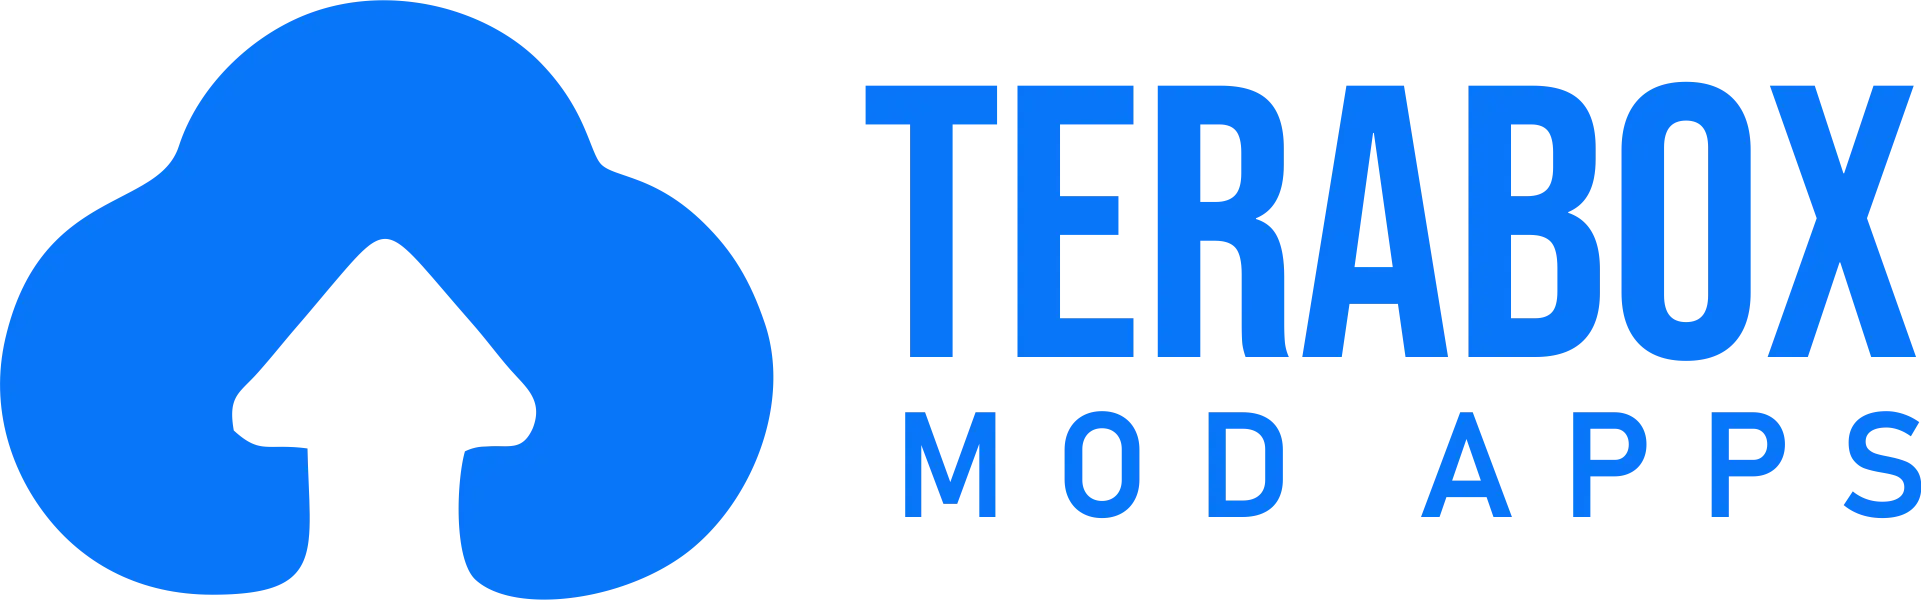 terabox mod apk logo